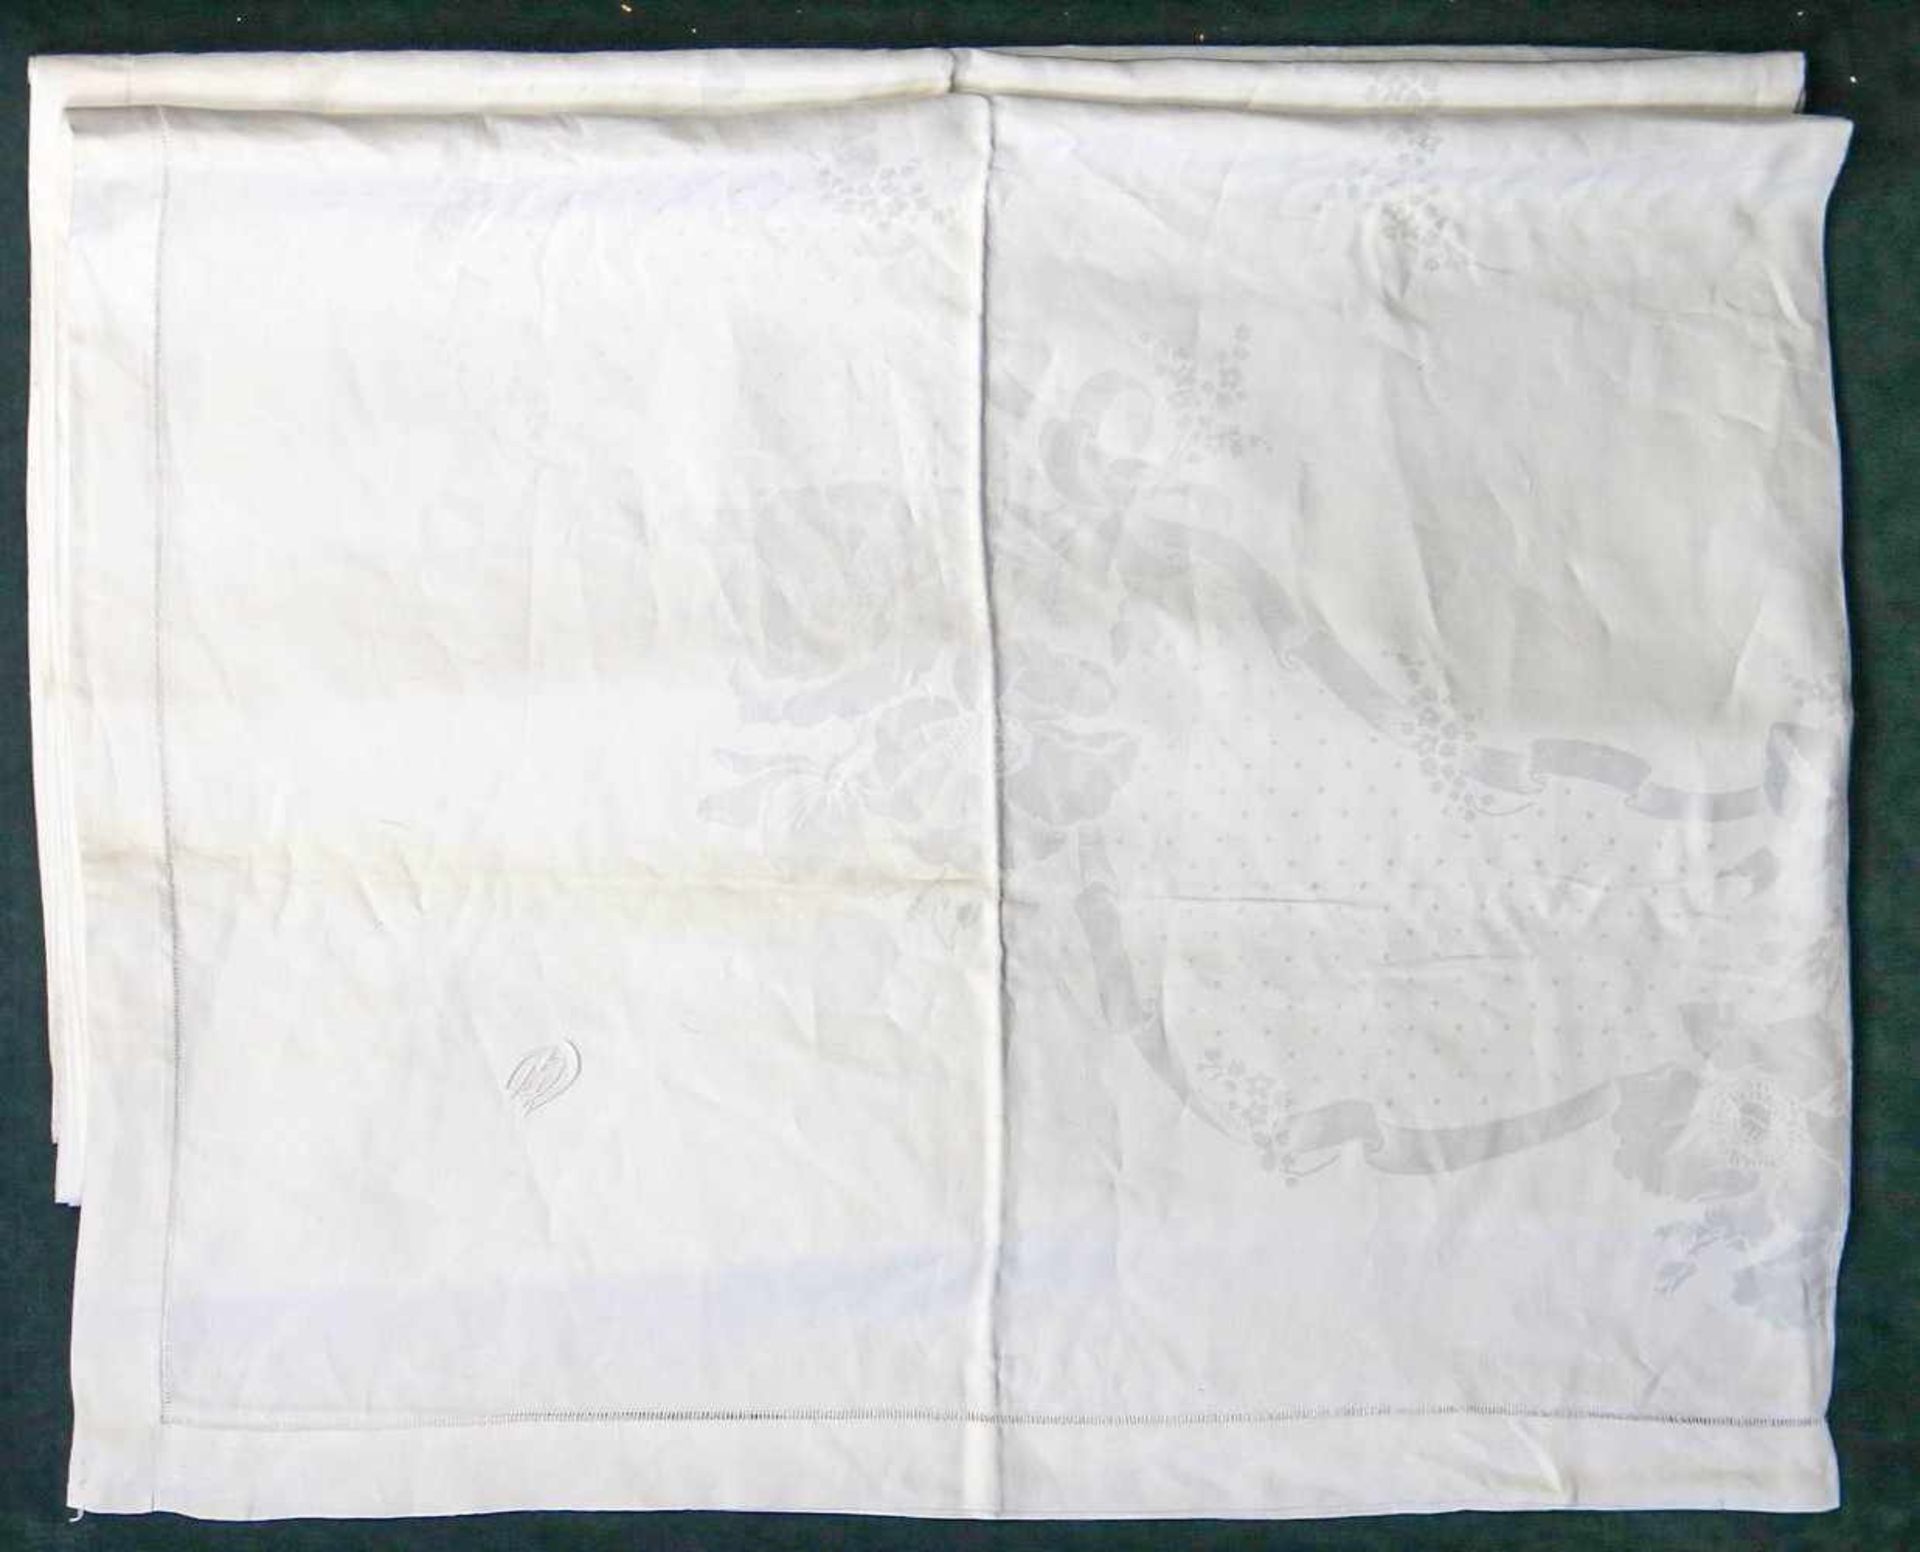 Großes Tafeltuch, weißes HalbleinenMit Hohlsaum. Eingewebte kl. Punkte, in der Mitte Blütenkränze. - Bild 3 aus 3